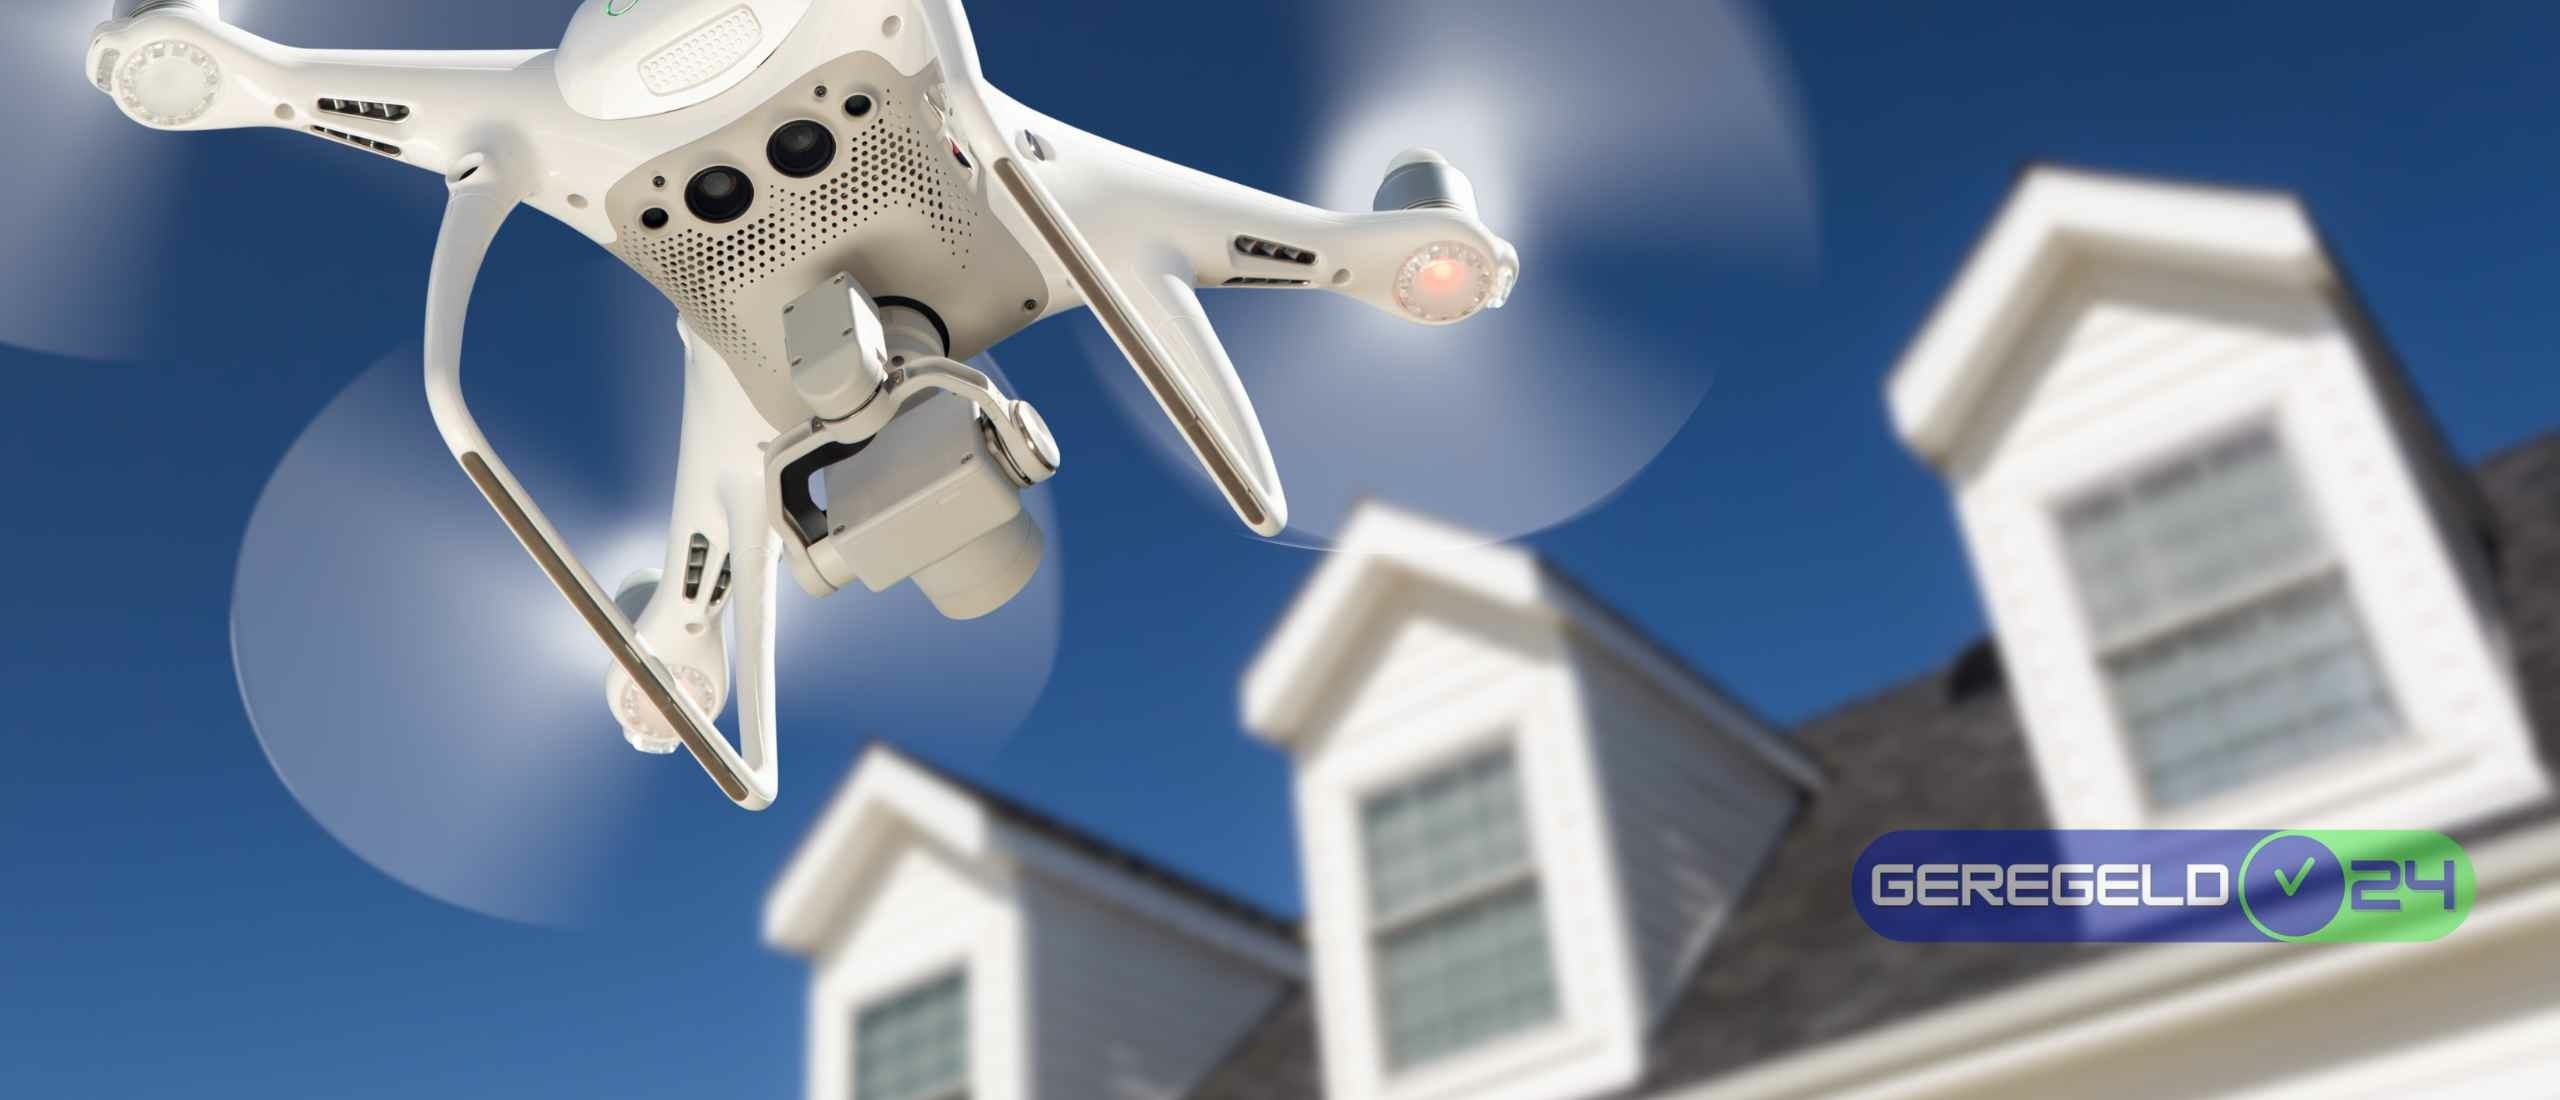 Huis verkopen: Maak een drone-video